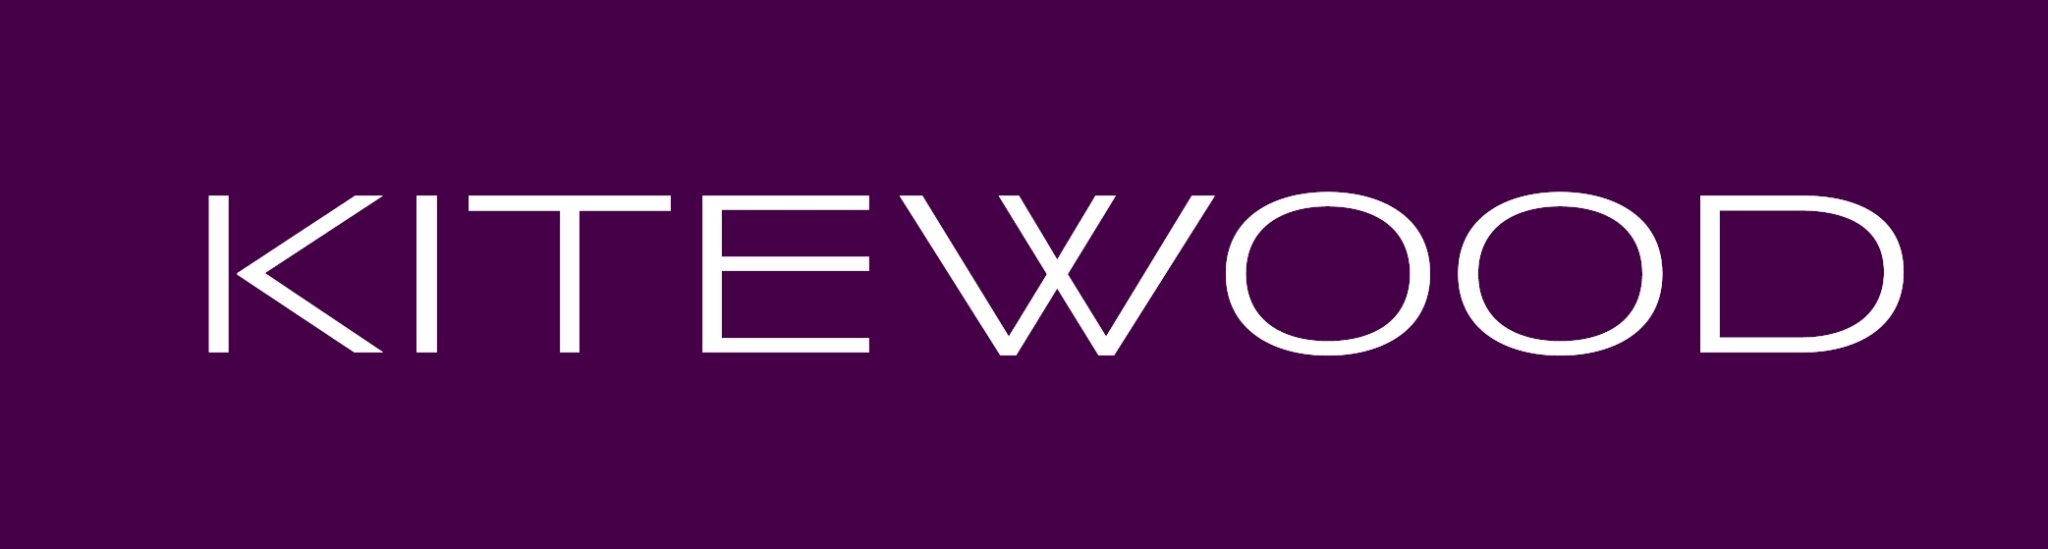 Kitewood-Logo-2016